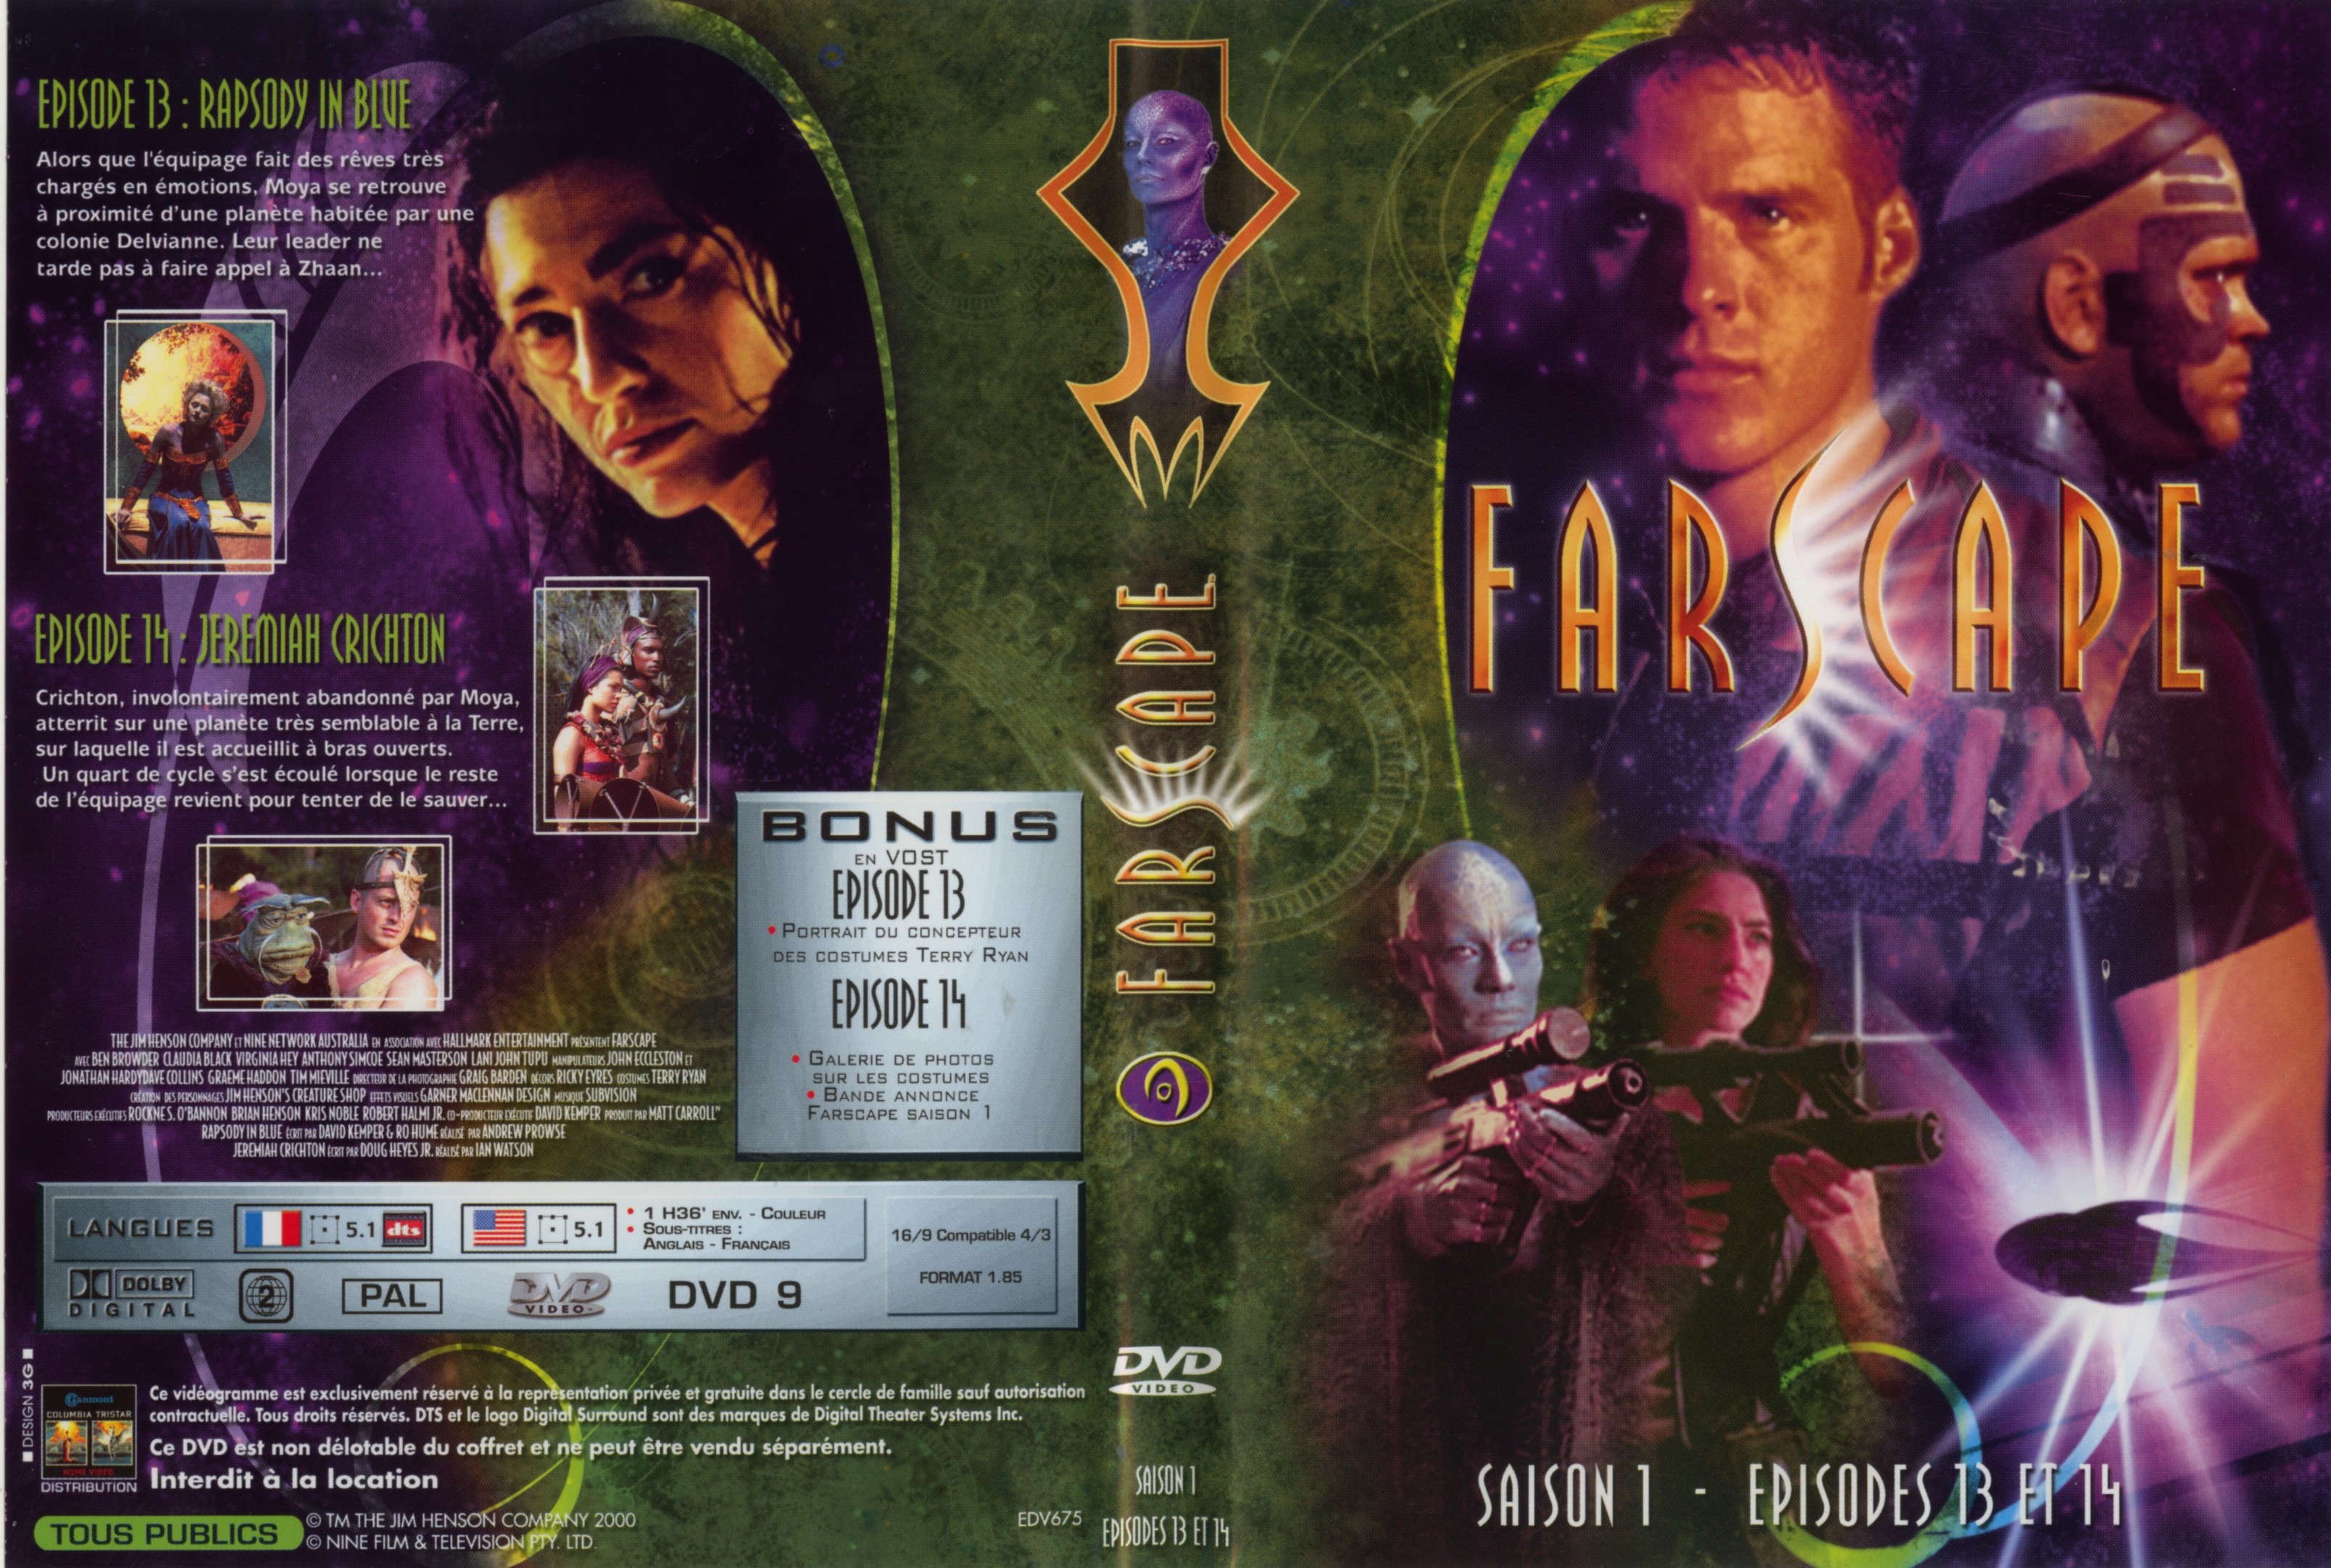 Jaquette DVD Farscape saison 1 dvd 07